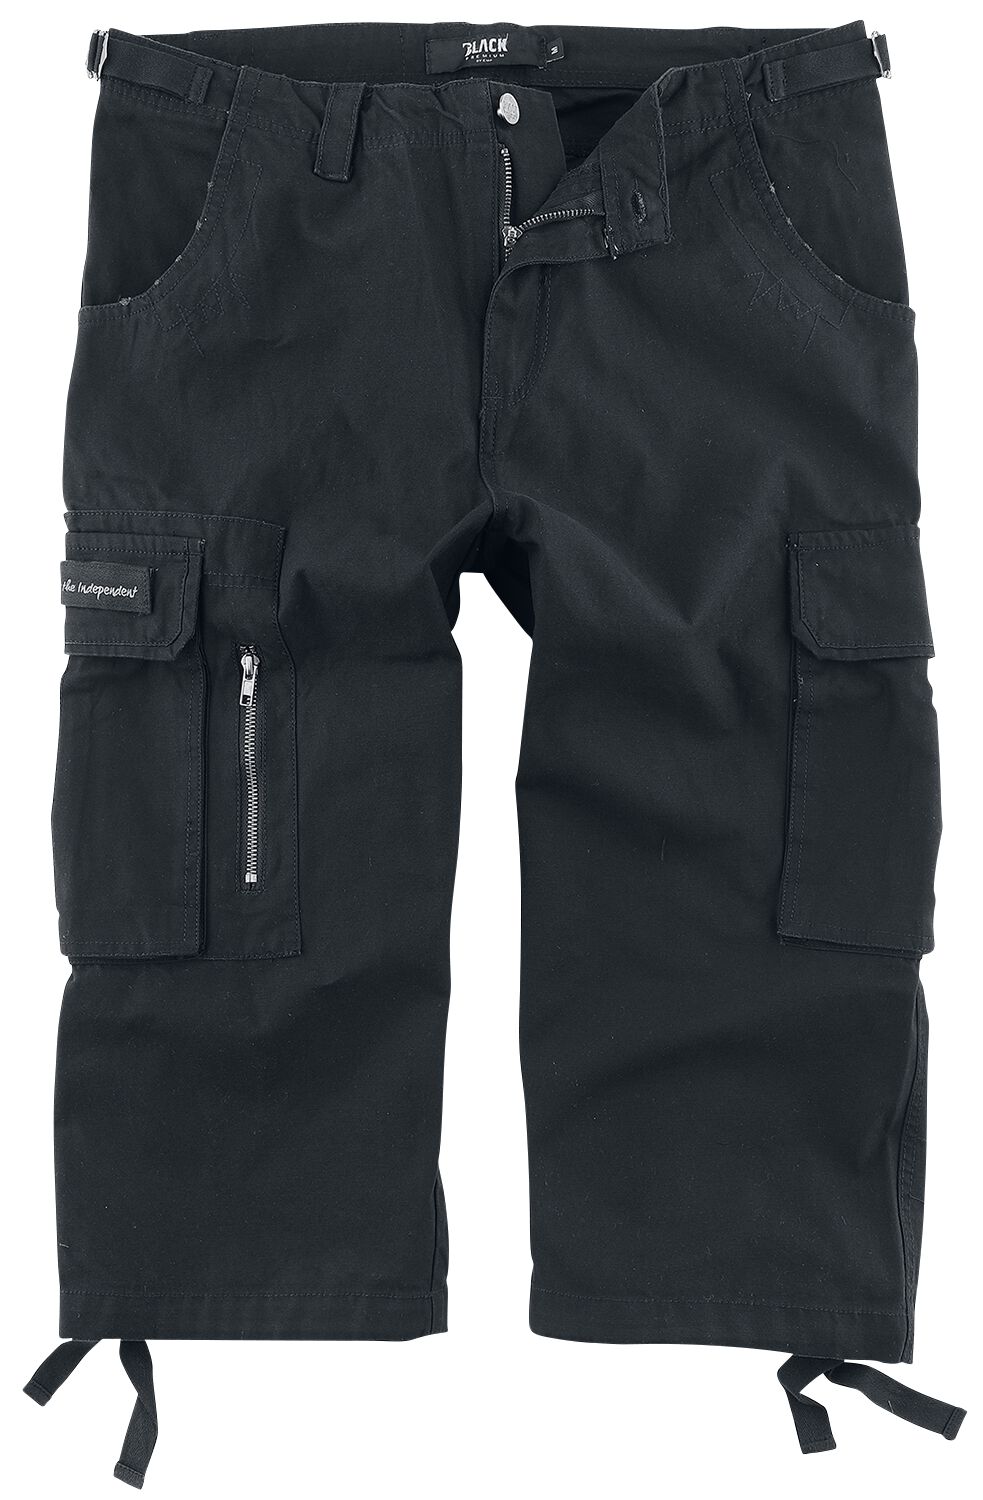 Black Premium by EMP 3/4 Army Vintage Shorts Short schwarz in 7XL